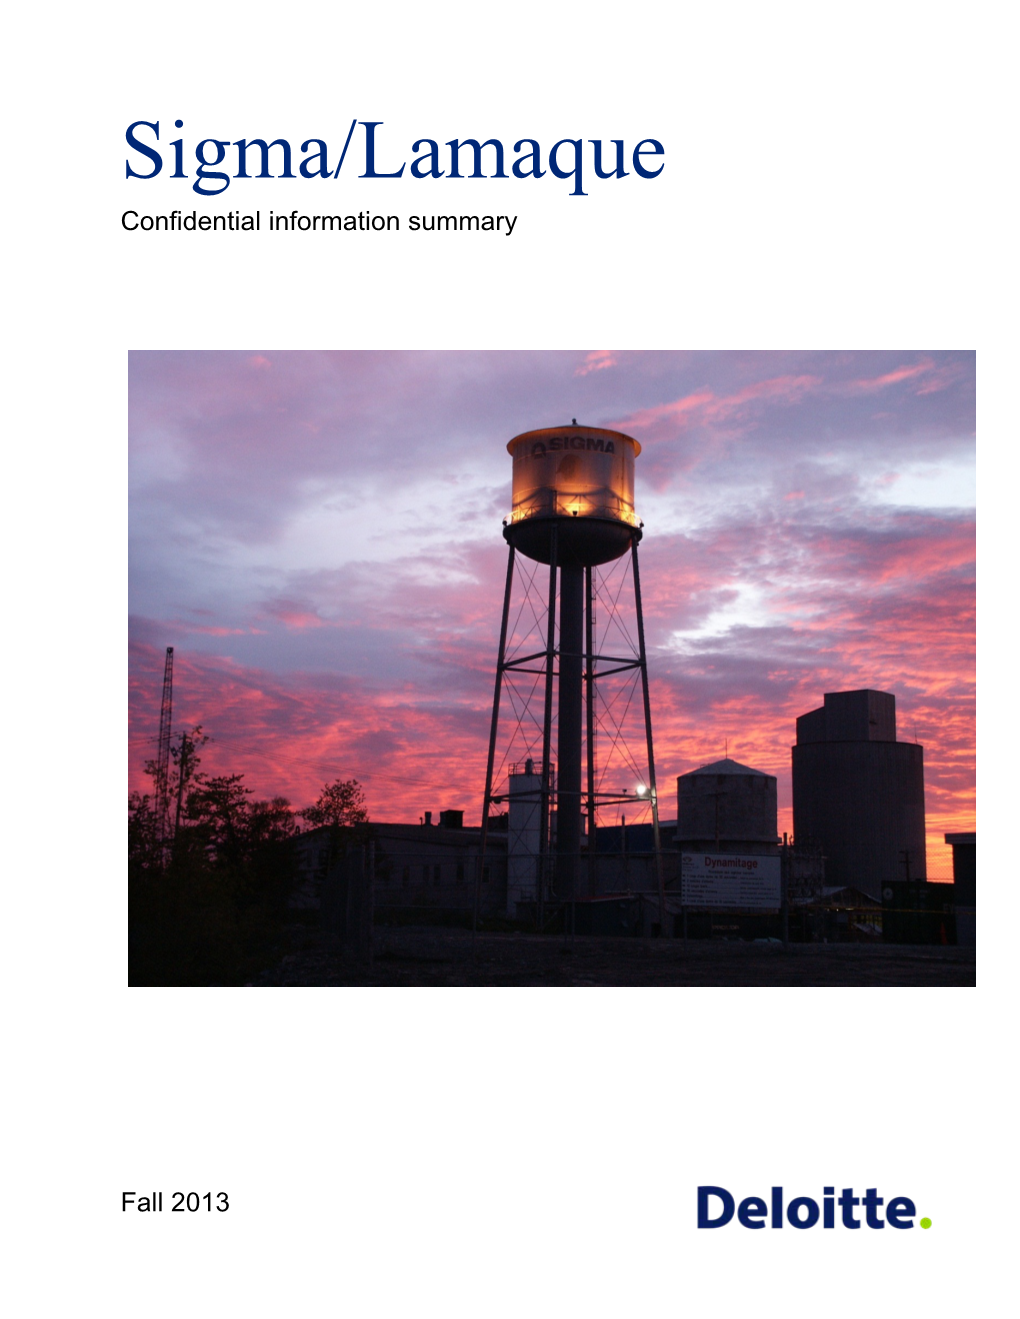 Sigma/Lamaque Confidential Information Summary